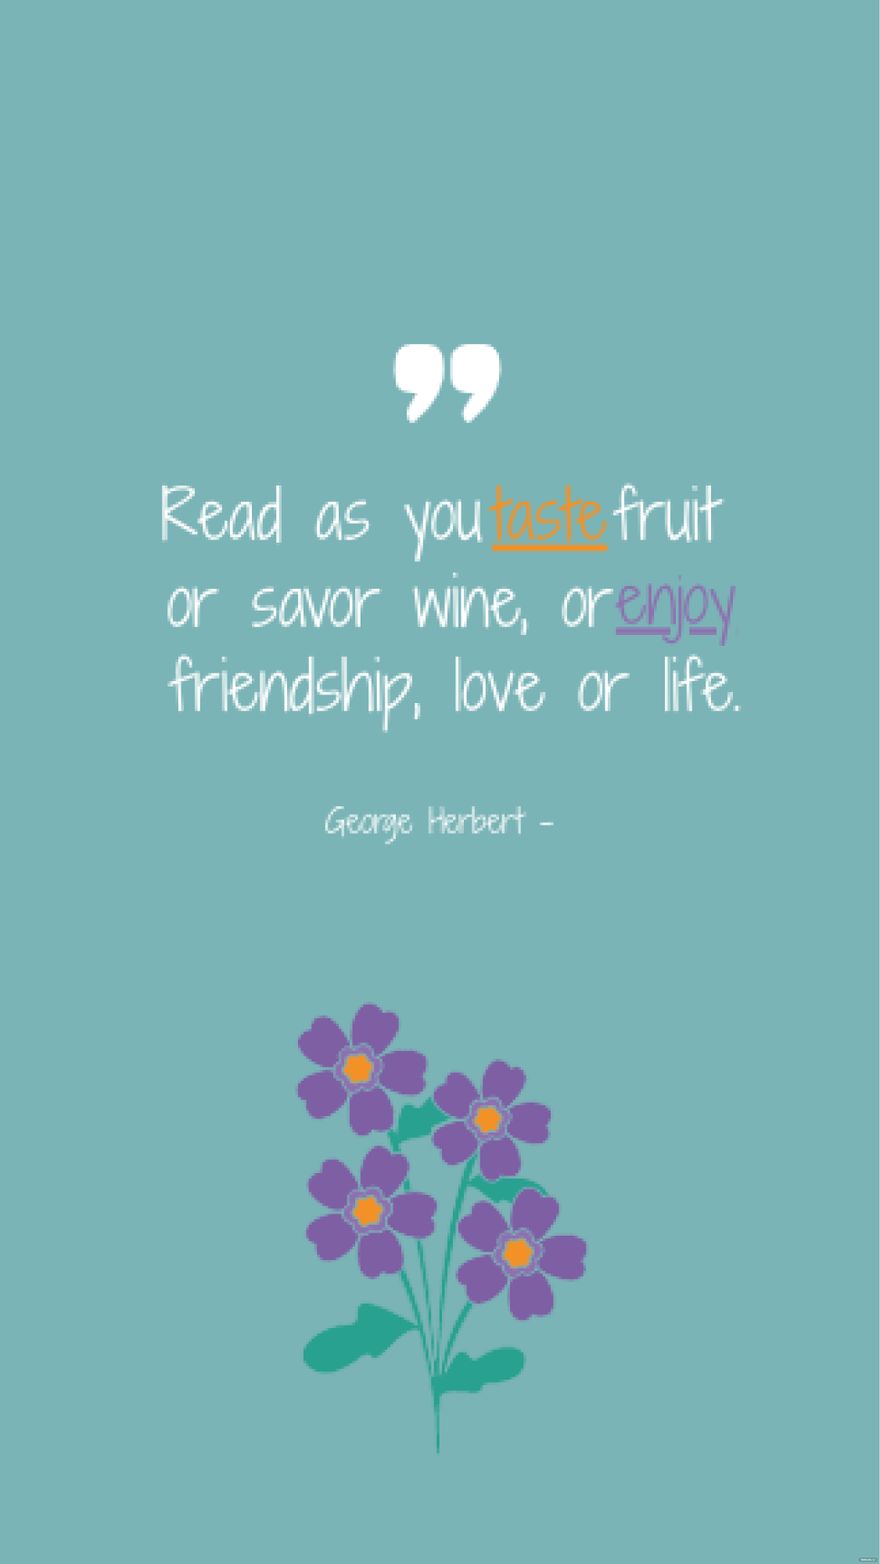 George Herbert - Read as you taste fruit or savor wine, or enjoy friendship, love or life.